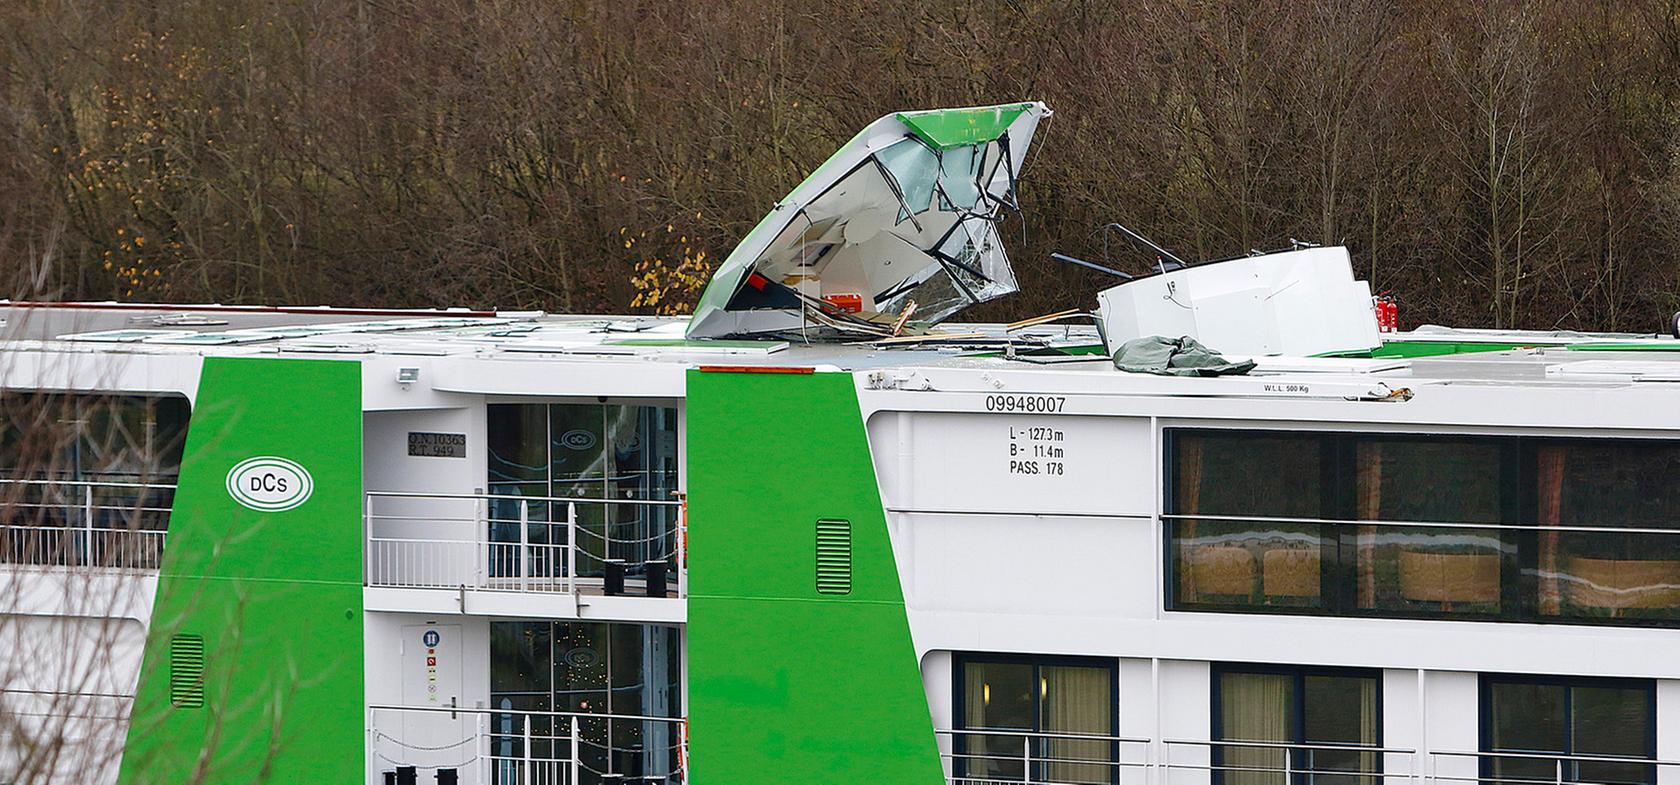 Steuerhaus von Schiff abgerissen: Schreck für 169 Passagiere